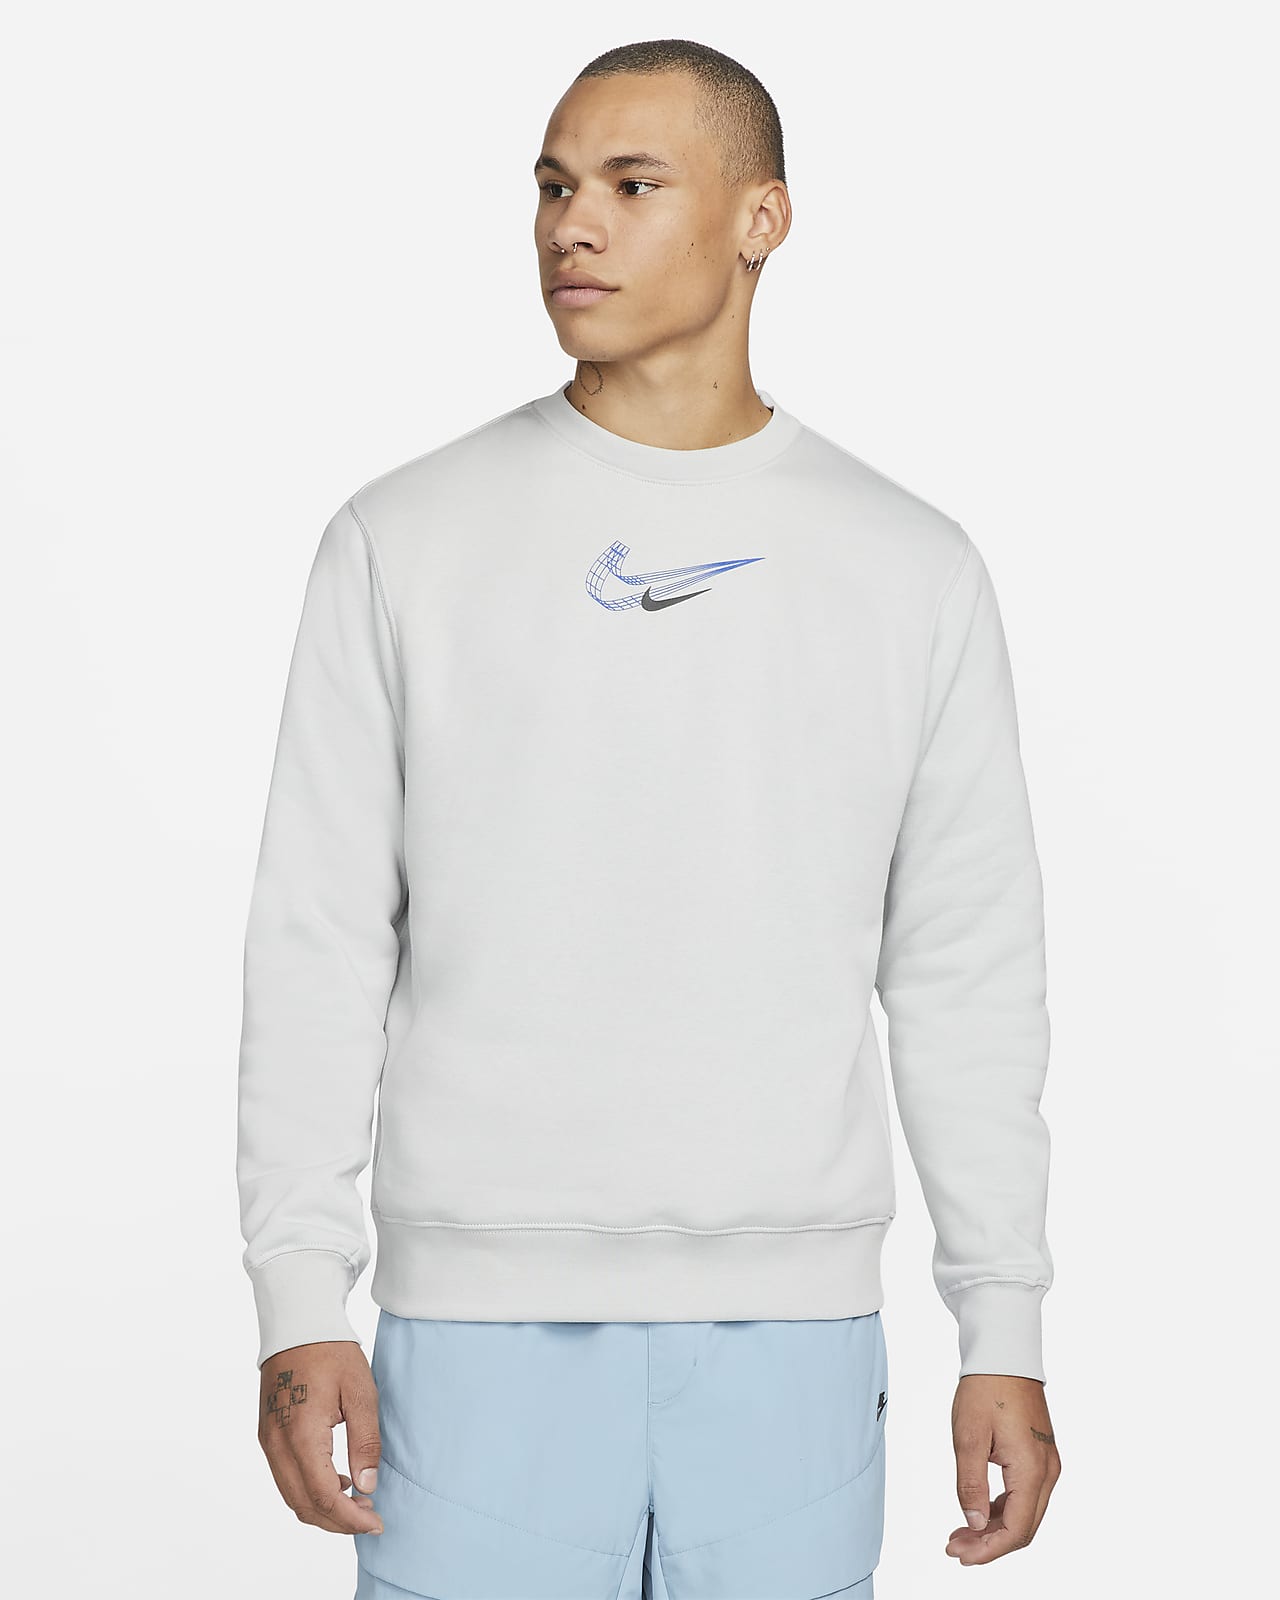 Nike Sportswear Men's Fleece Sweatshirt